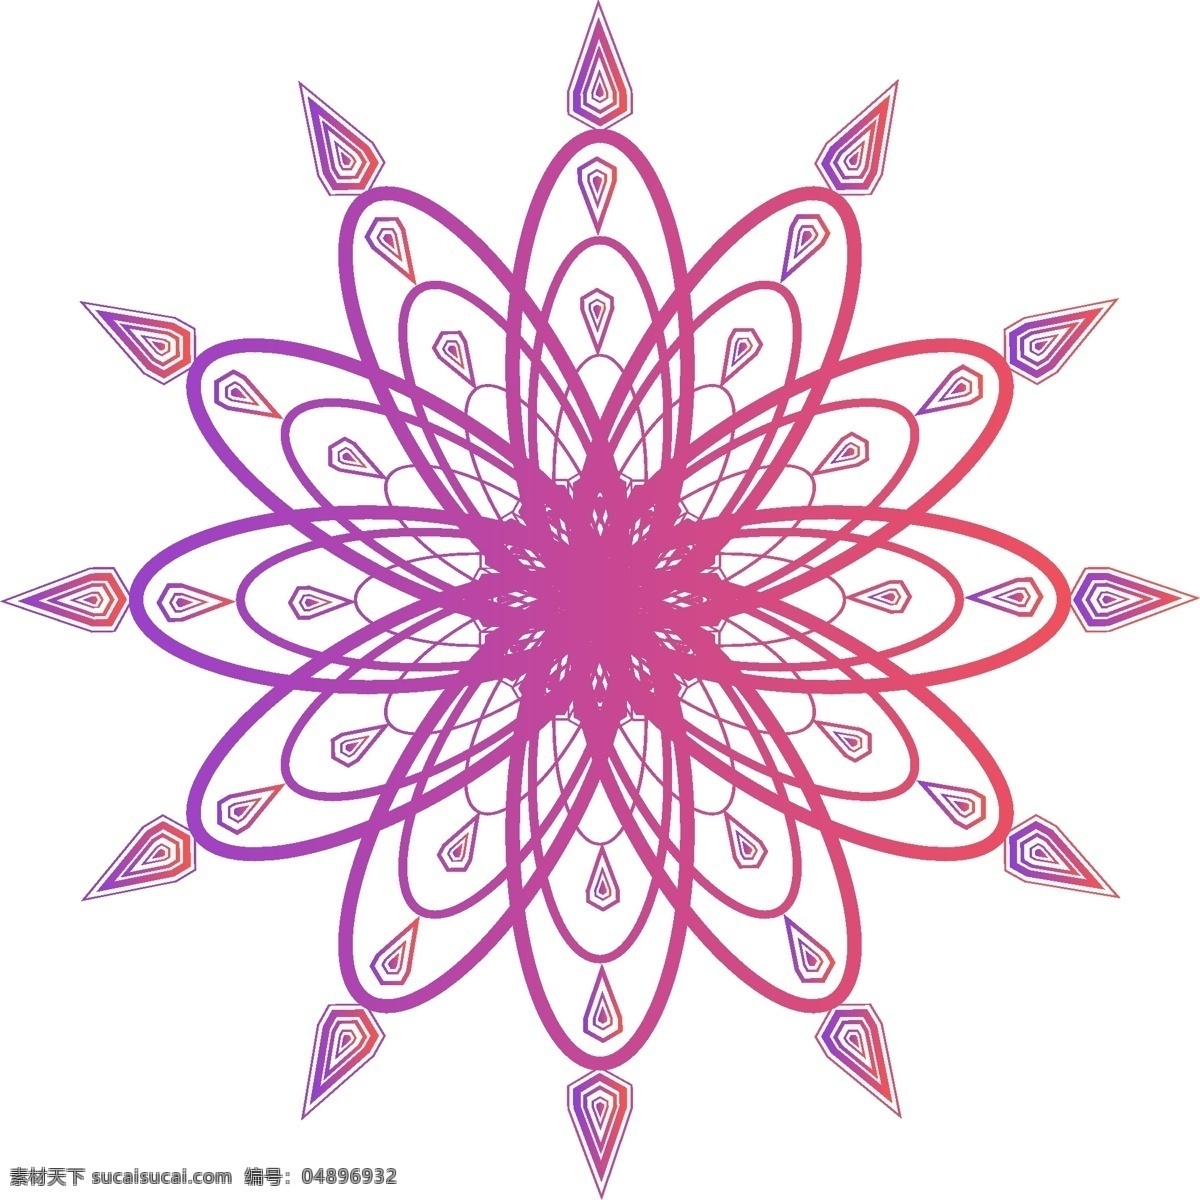 原创 矢量 几何 旋转 炫彩 渐变 紫色 装饰 元素 花纹 设计元素 可商用